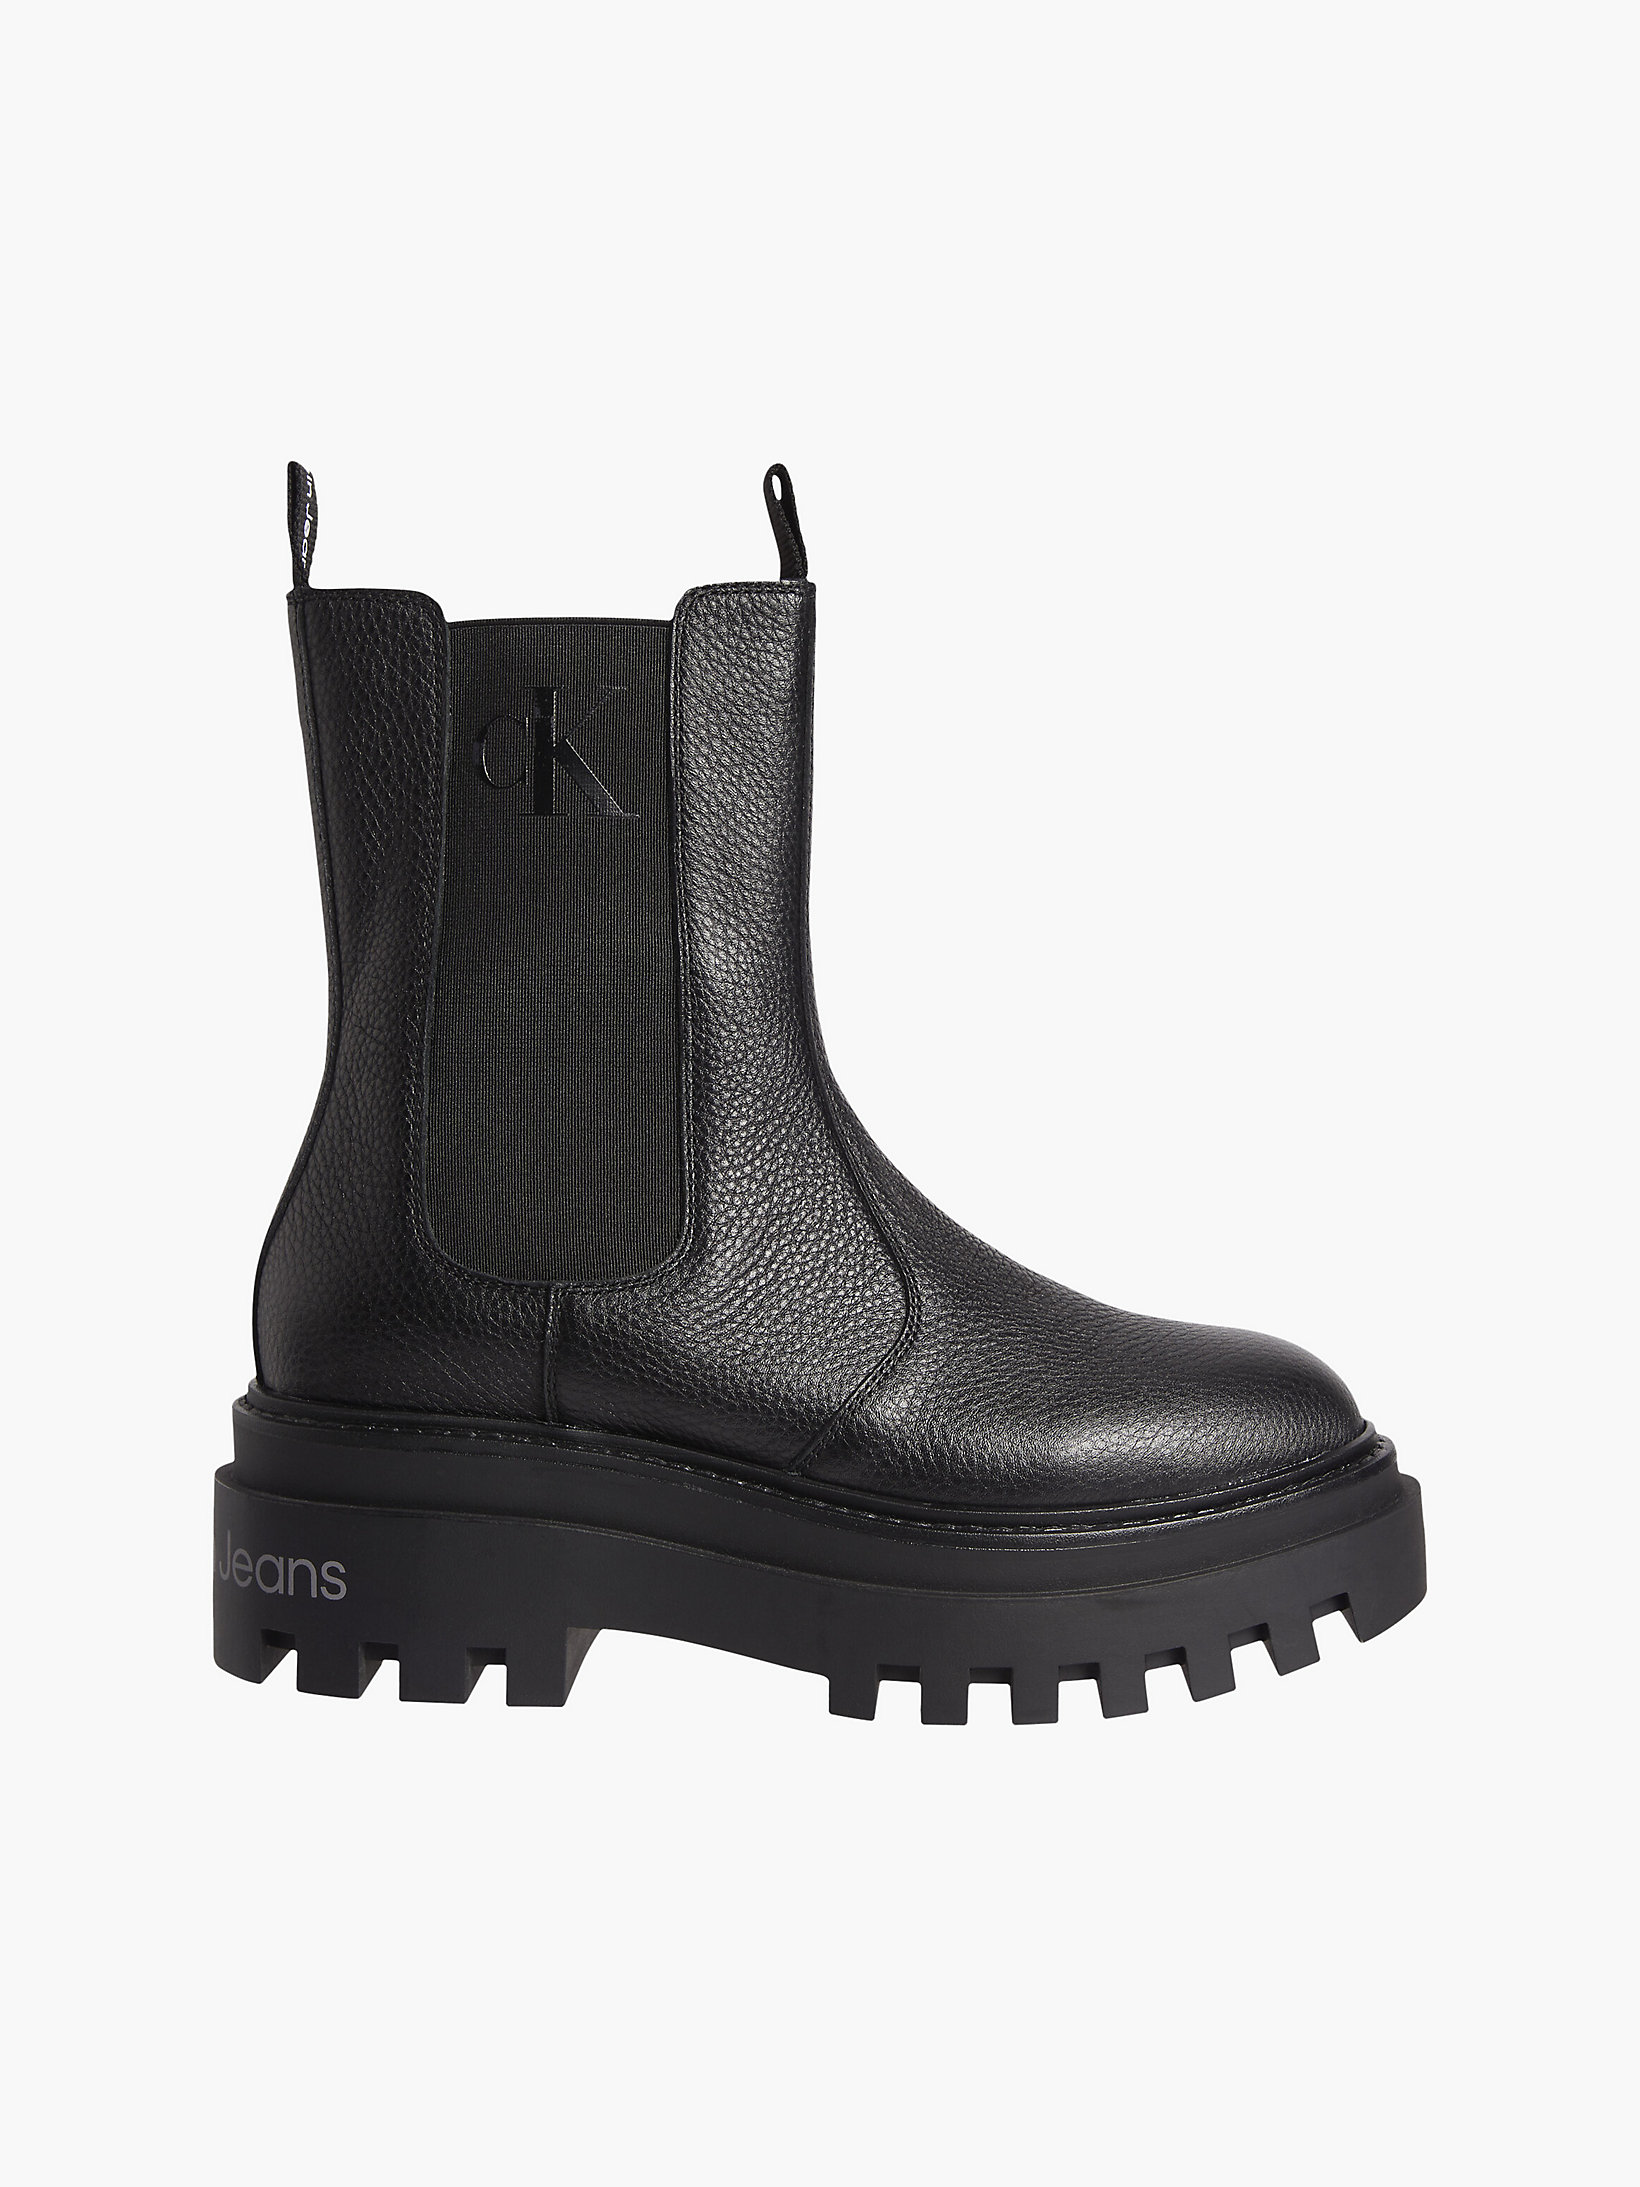 Black > Chelsea-Boots Aus Leder Mit Plateau-Sohle > undefined Damen - Calvin Klein